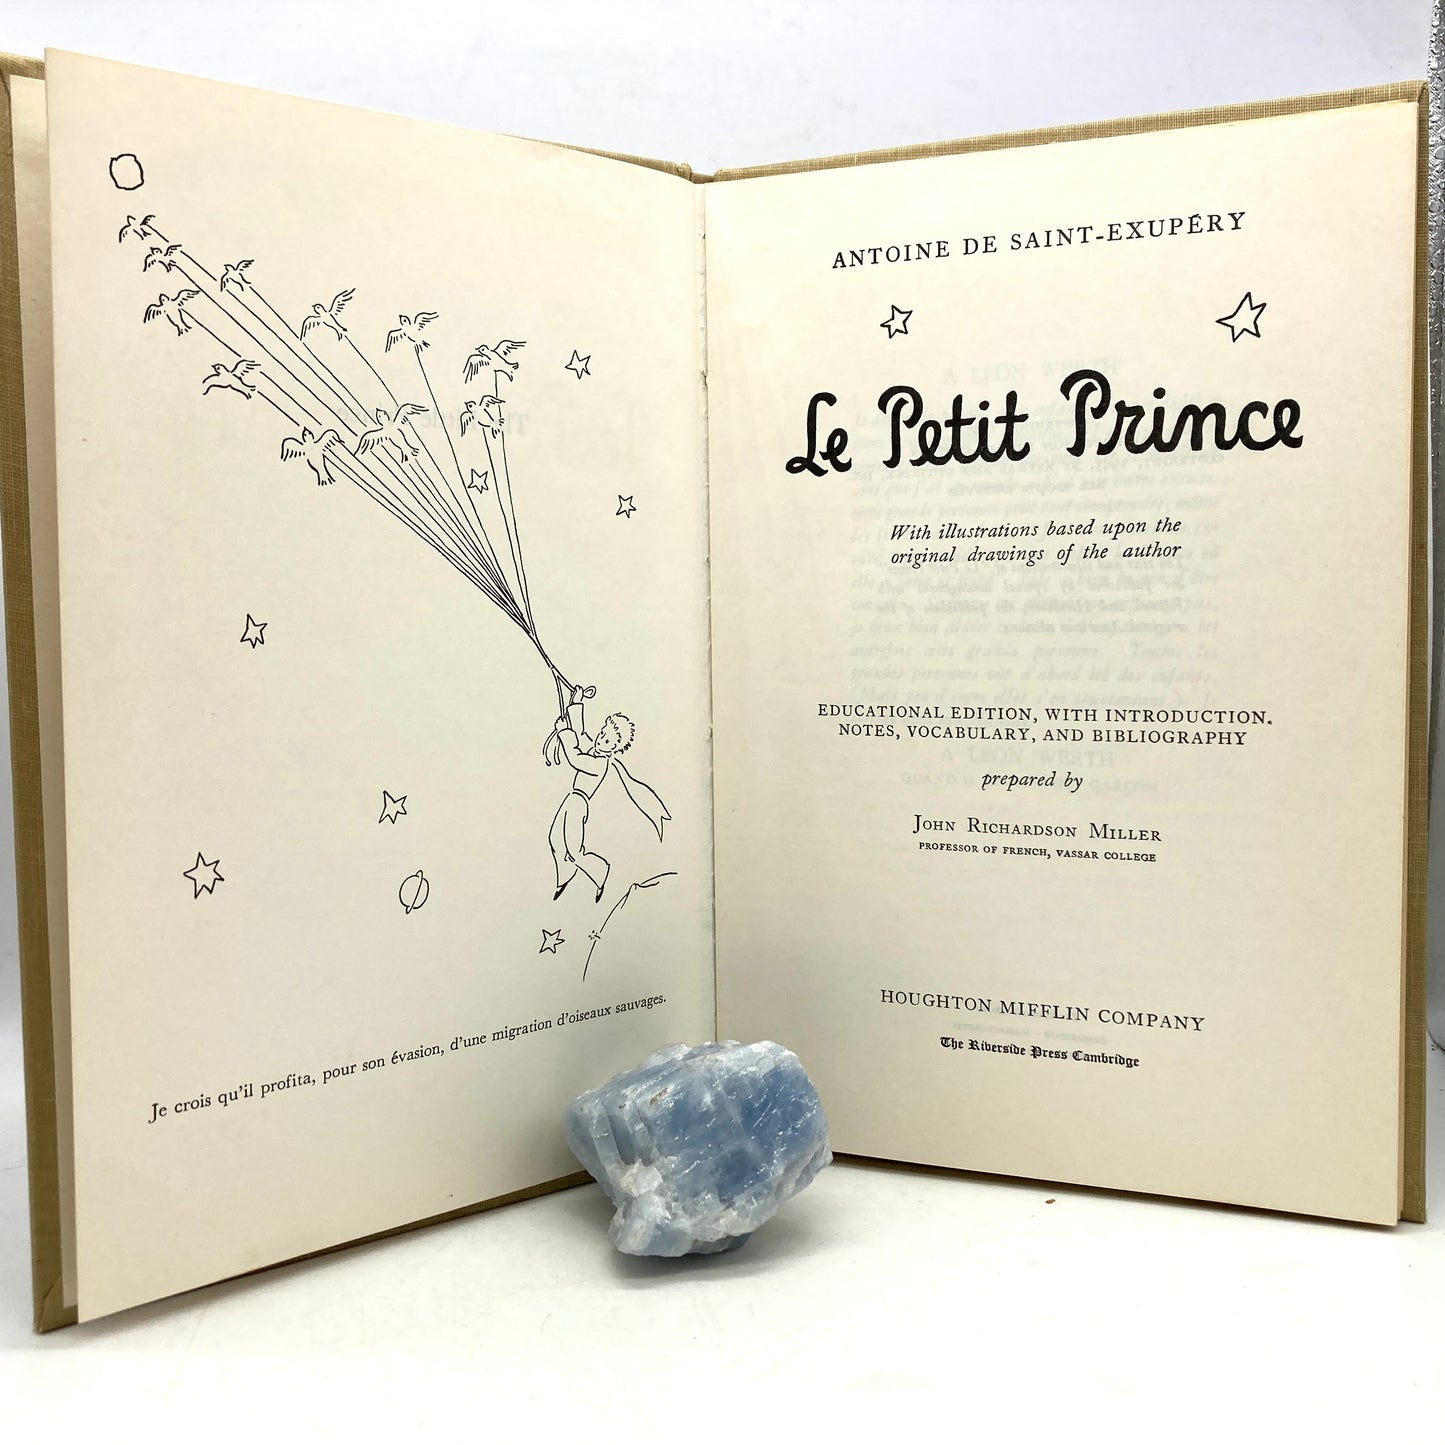 DE SAINT-EXUPERY, Antoine "Le Petit Prince" [Houghton Mifflin, 1946]